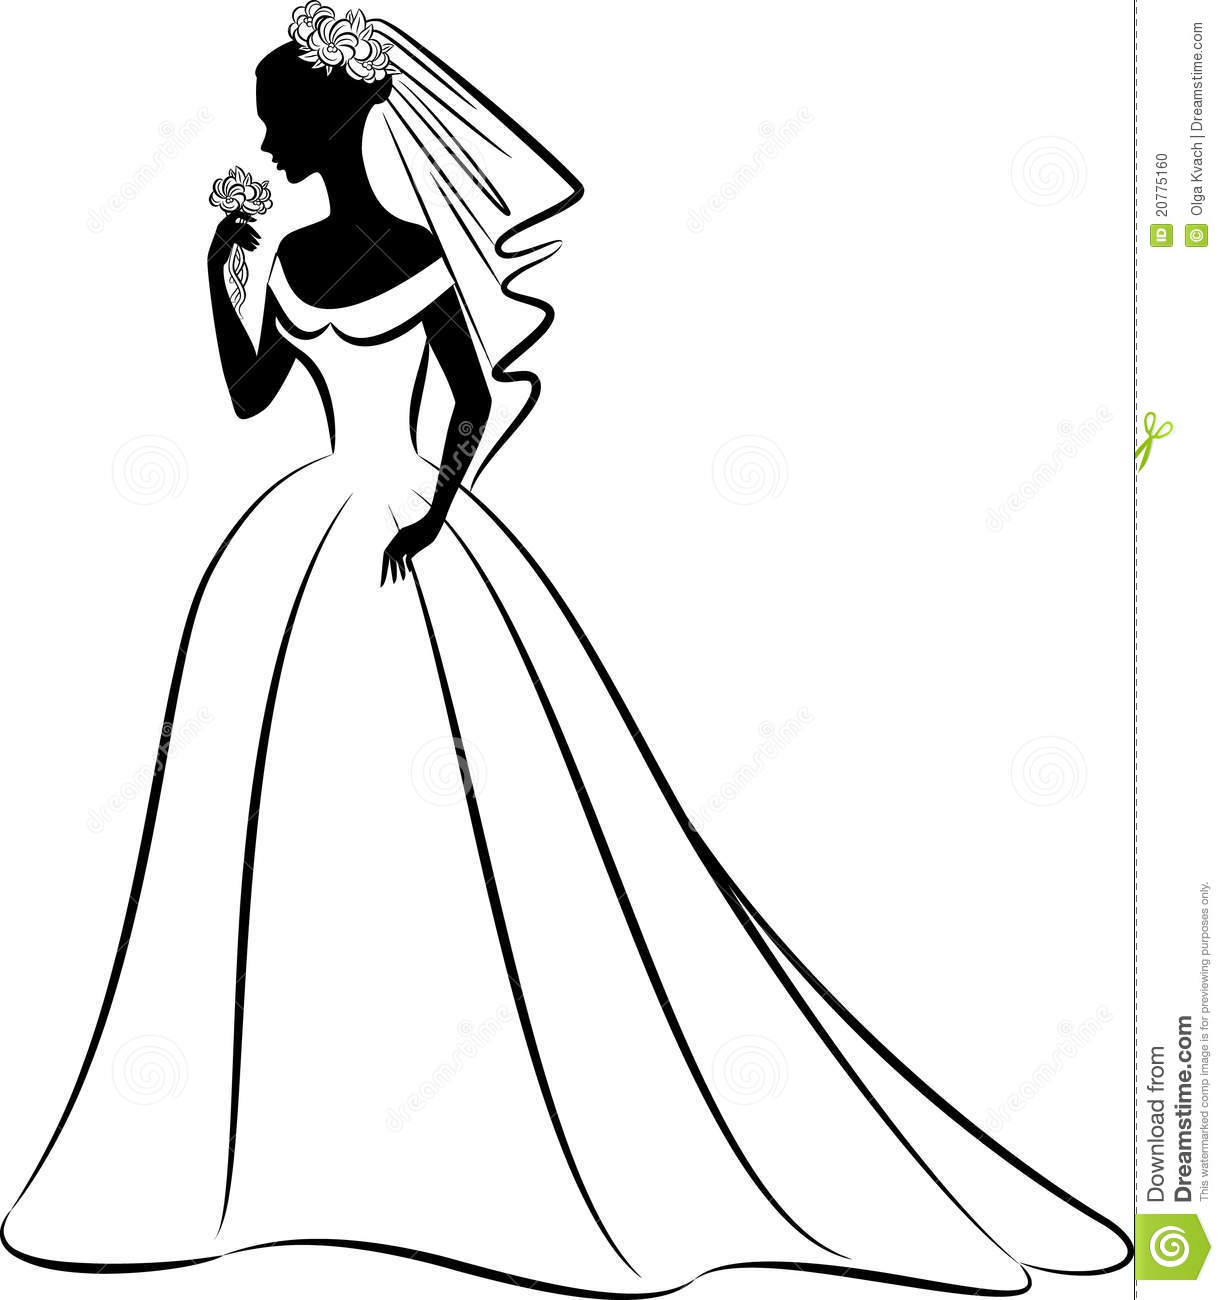 creative cartoon vector bride